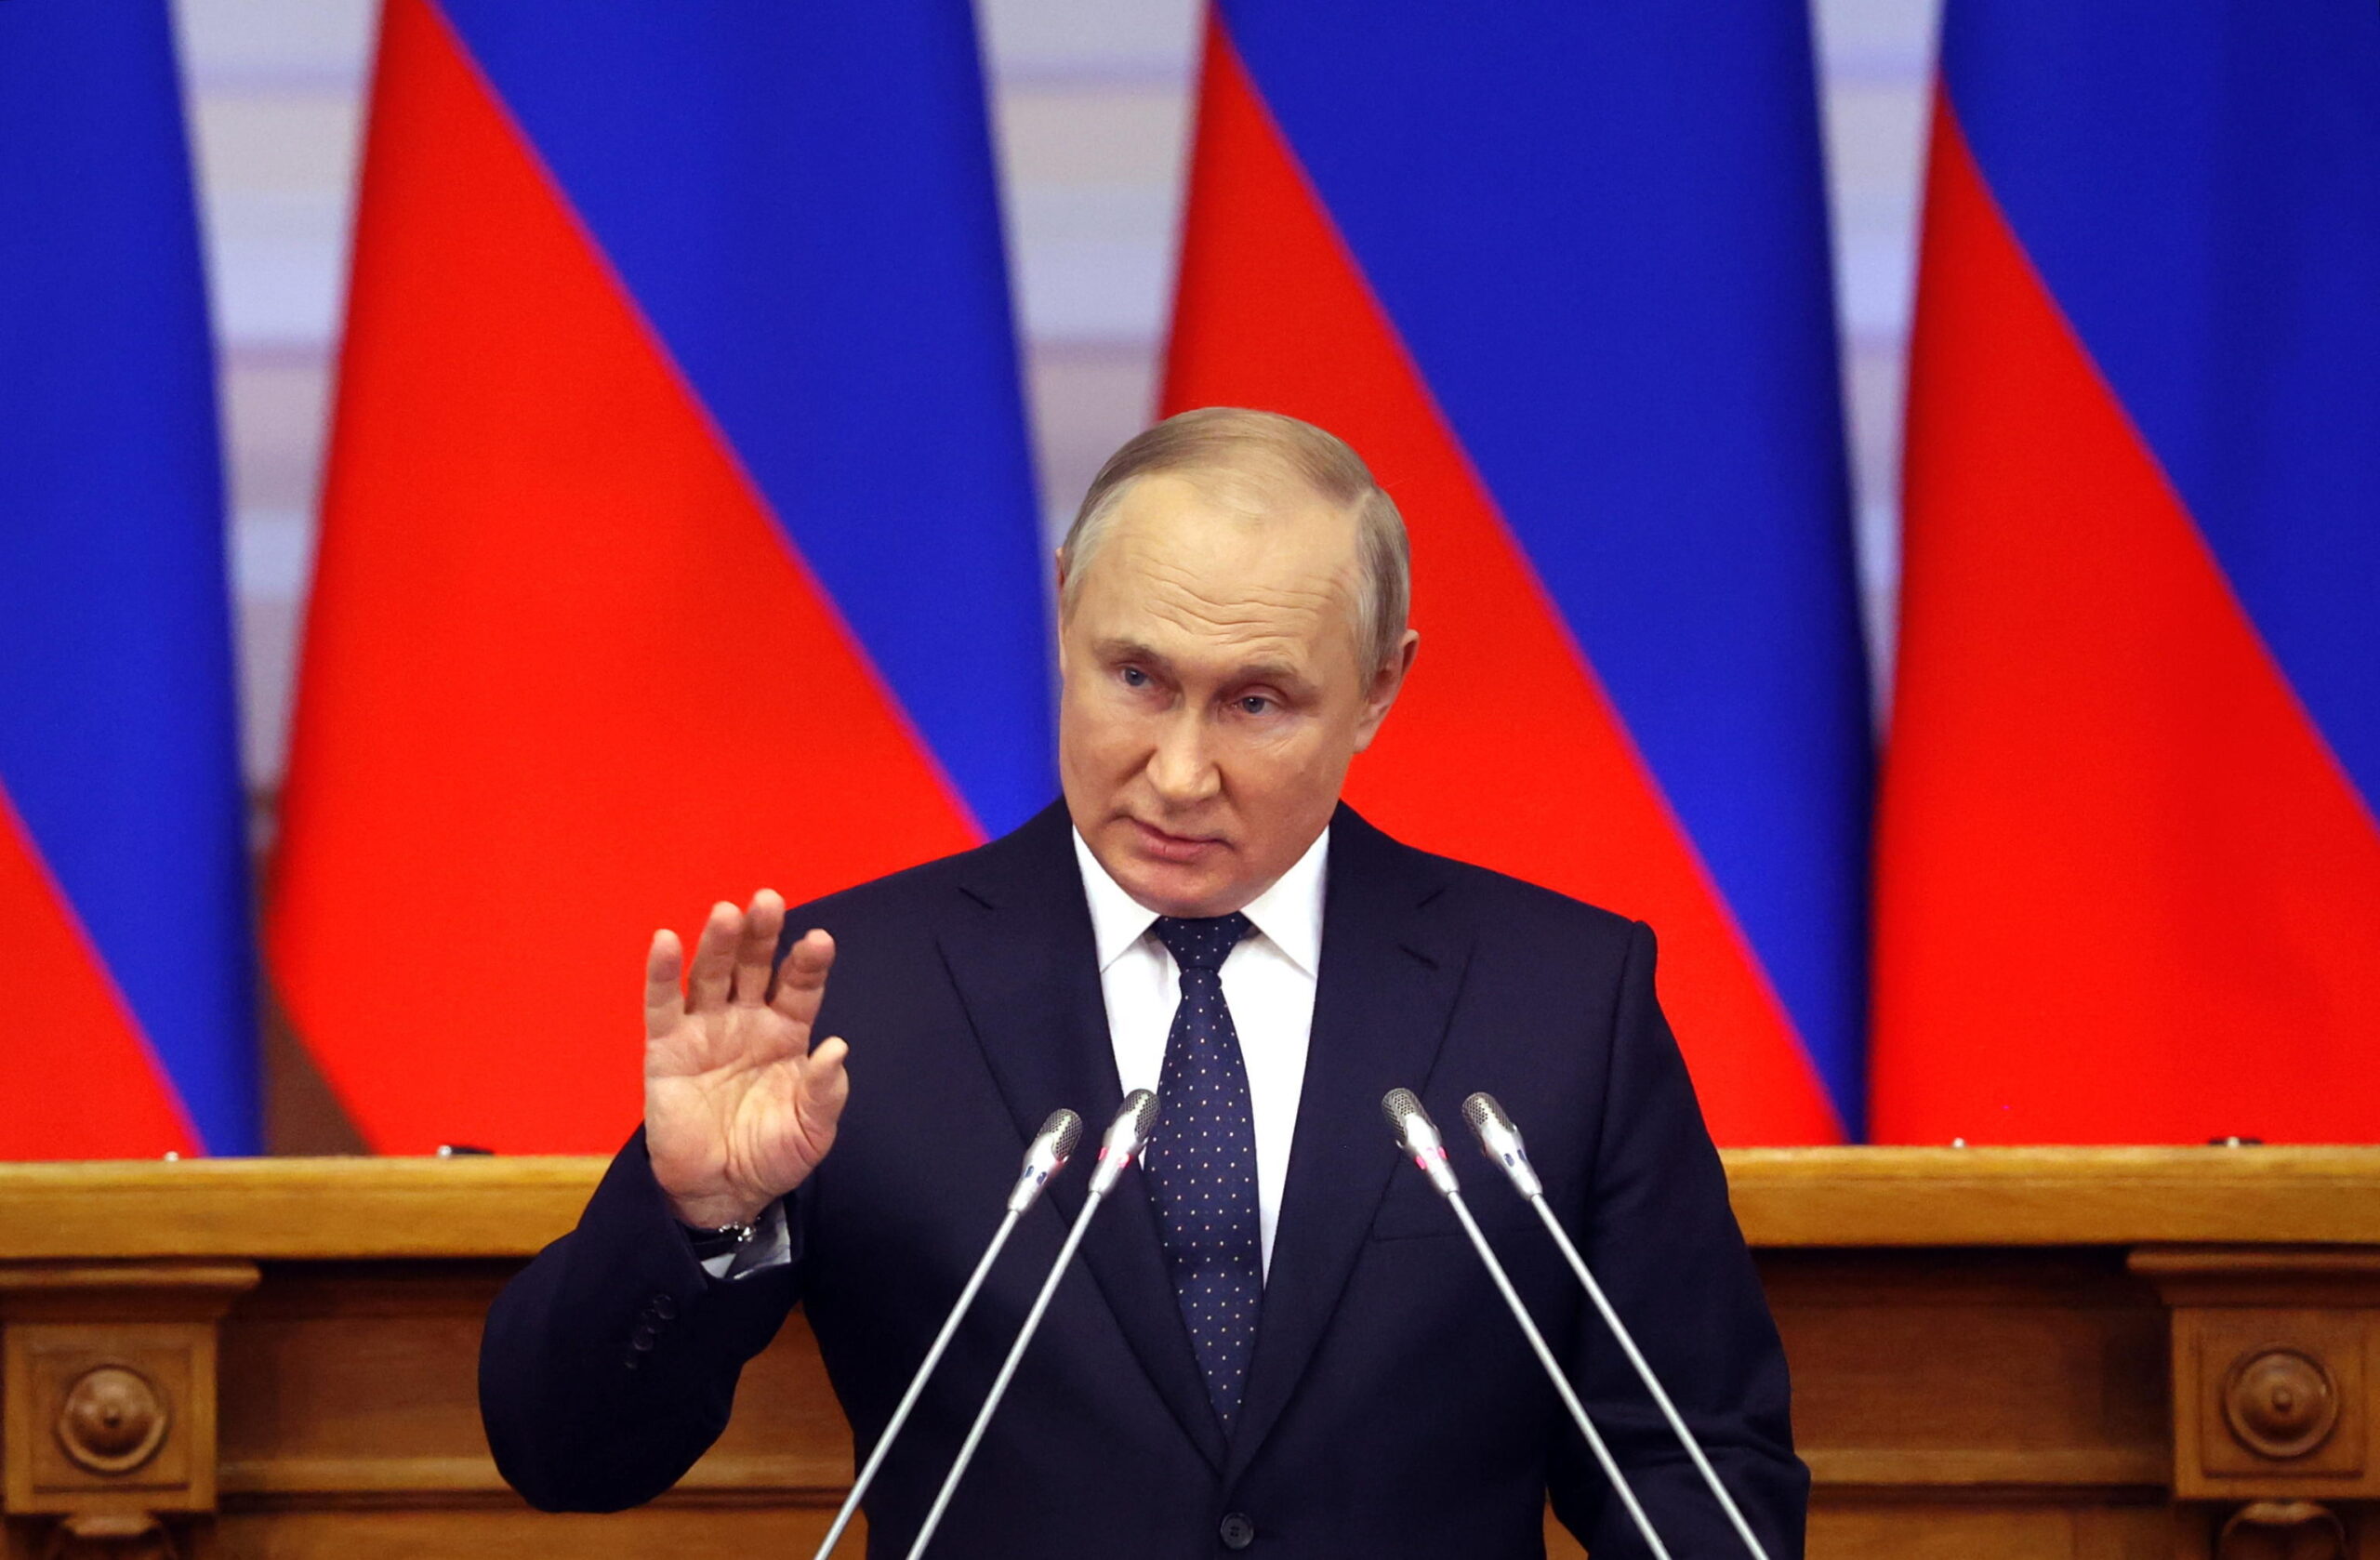 Parata della vittoria a Mosca, Putin: “Usa umiliano il mondo, noi siamo diversi”